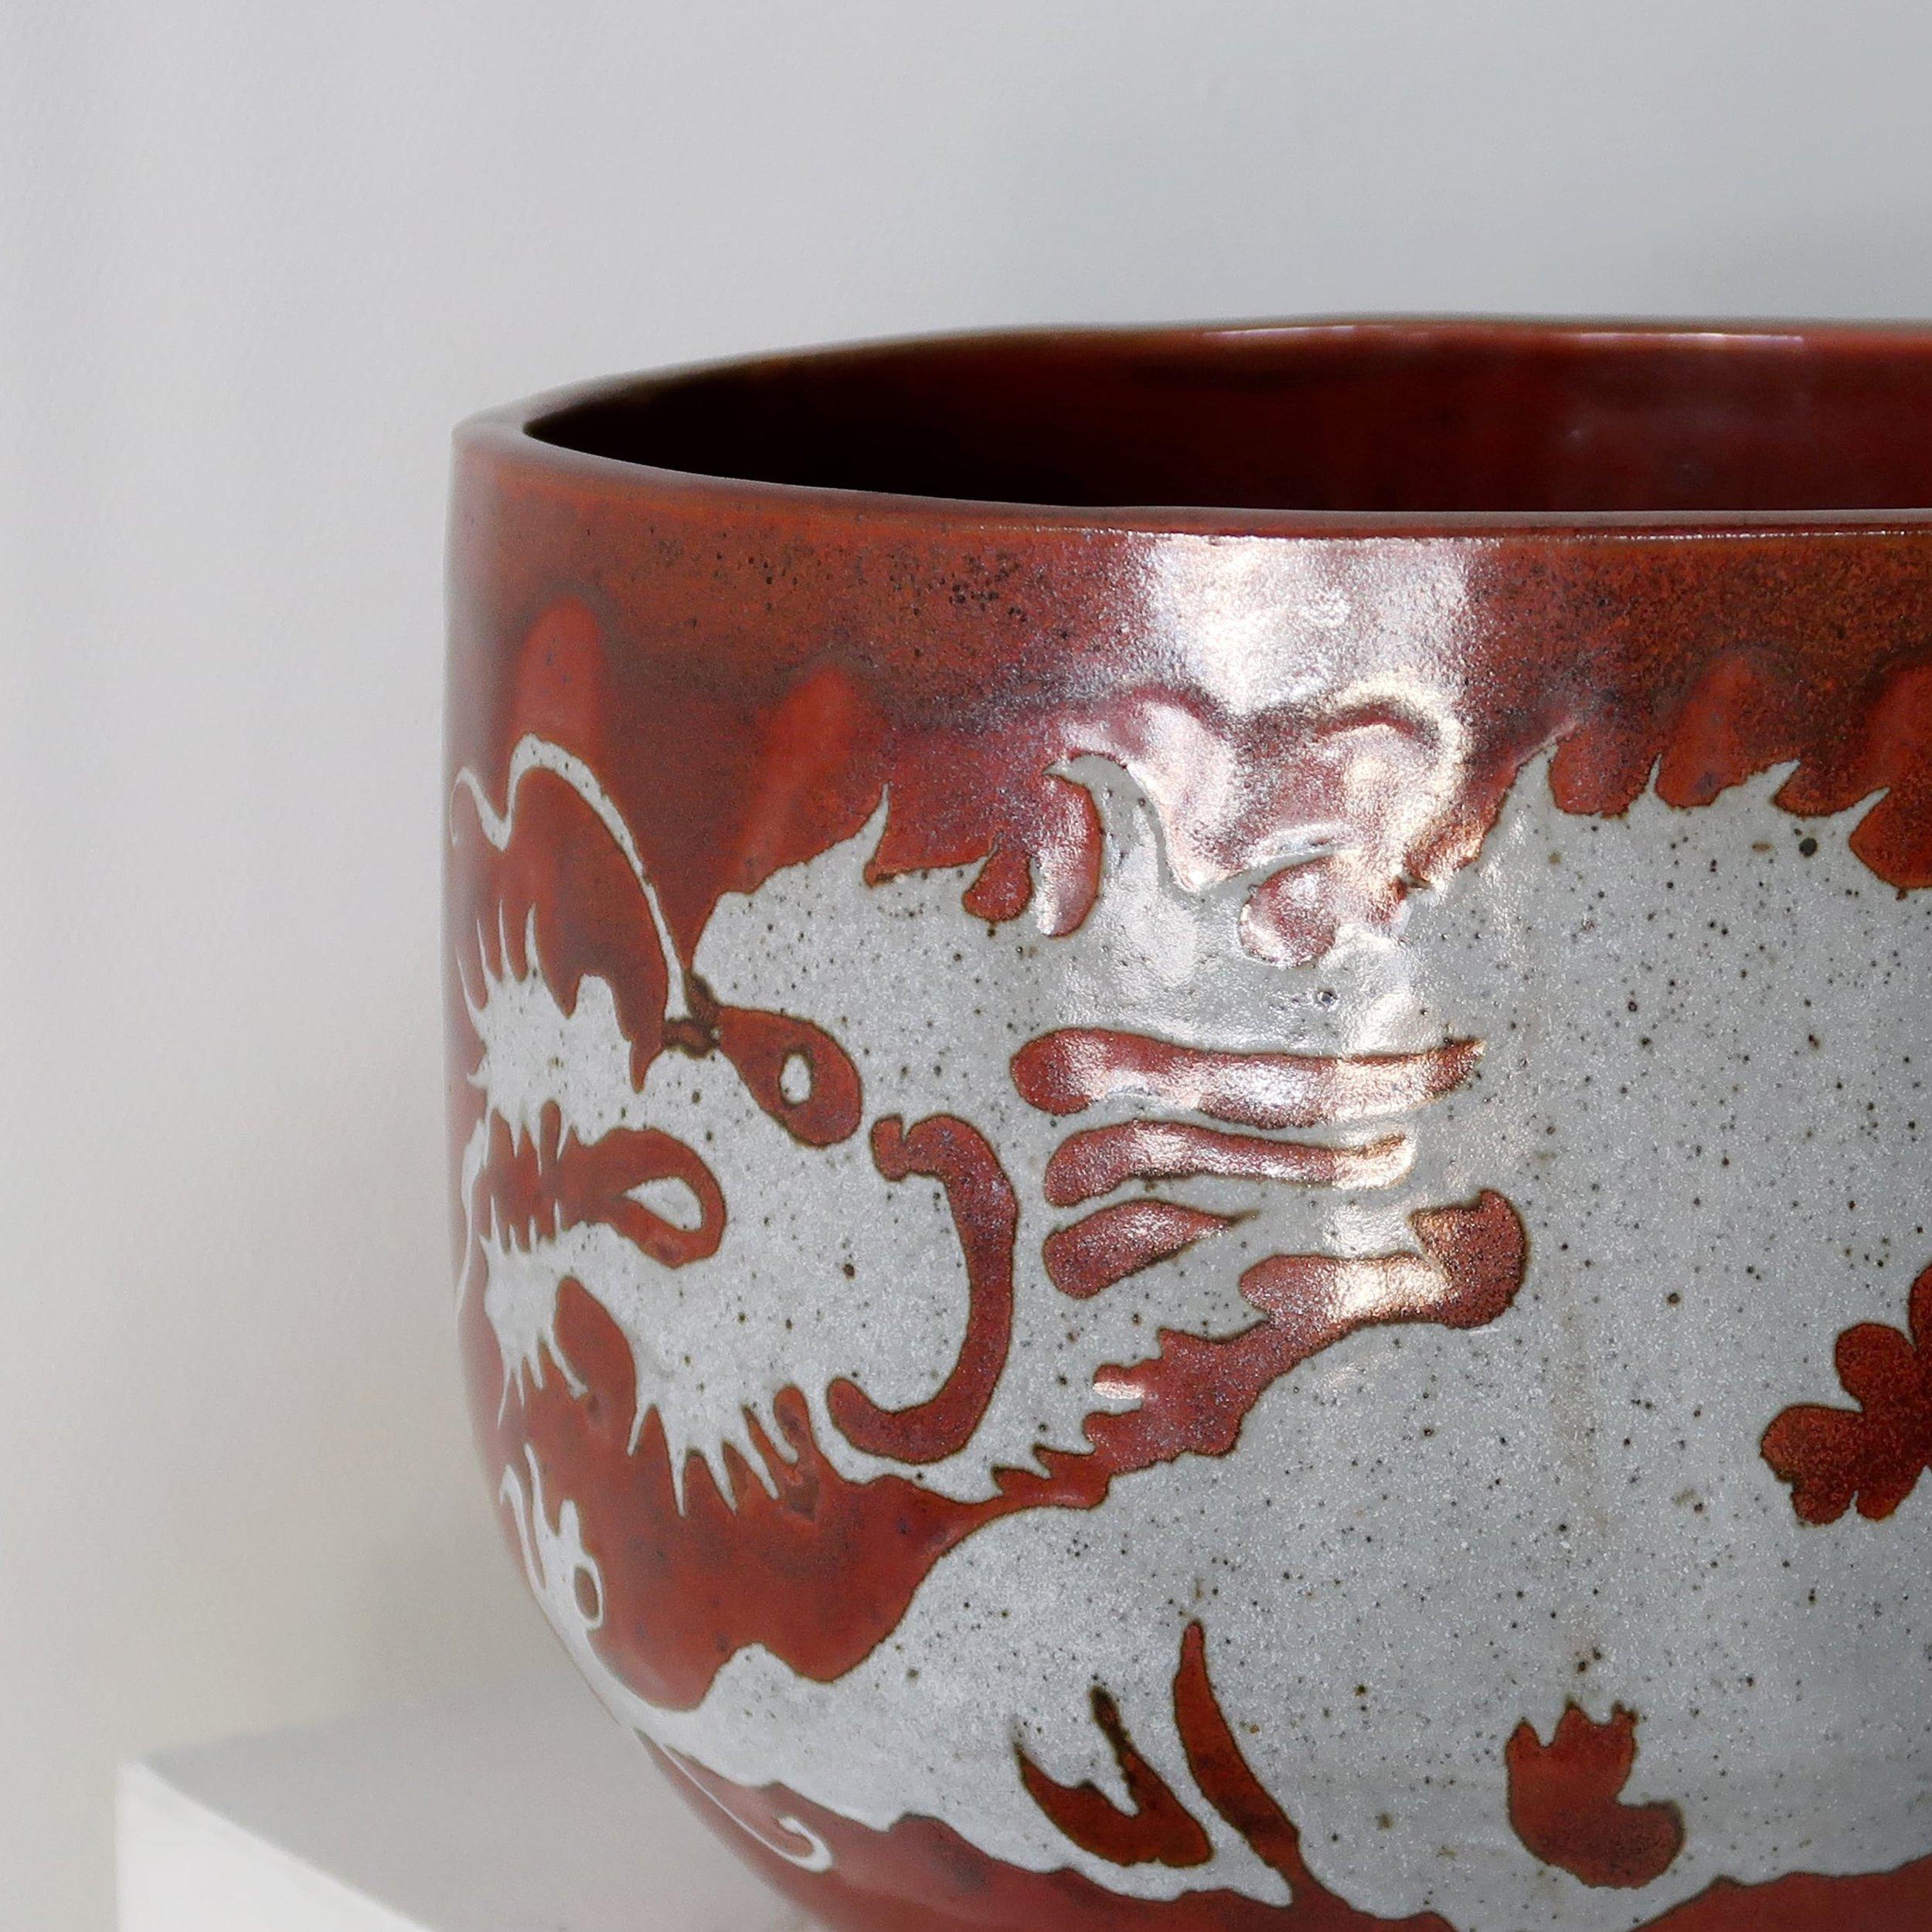 Pot en céramique de style asiatique de Gay Schempp, de couleur marron frappante et orné de caractères asiatiques gris complexes. Cette pièce unique allie l'art et la fonctionnalité. (signé)

Cette pièce de poterie n'est pas munie d'un trou